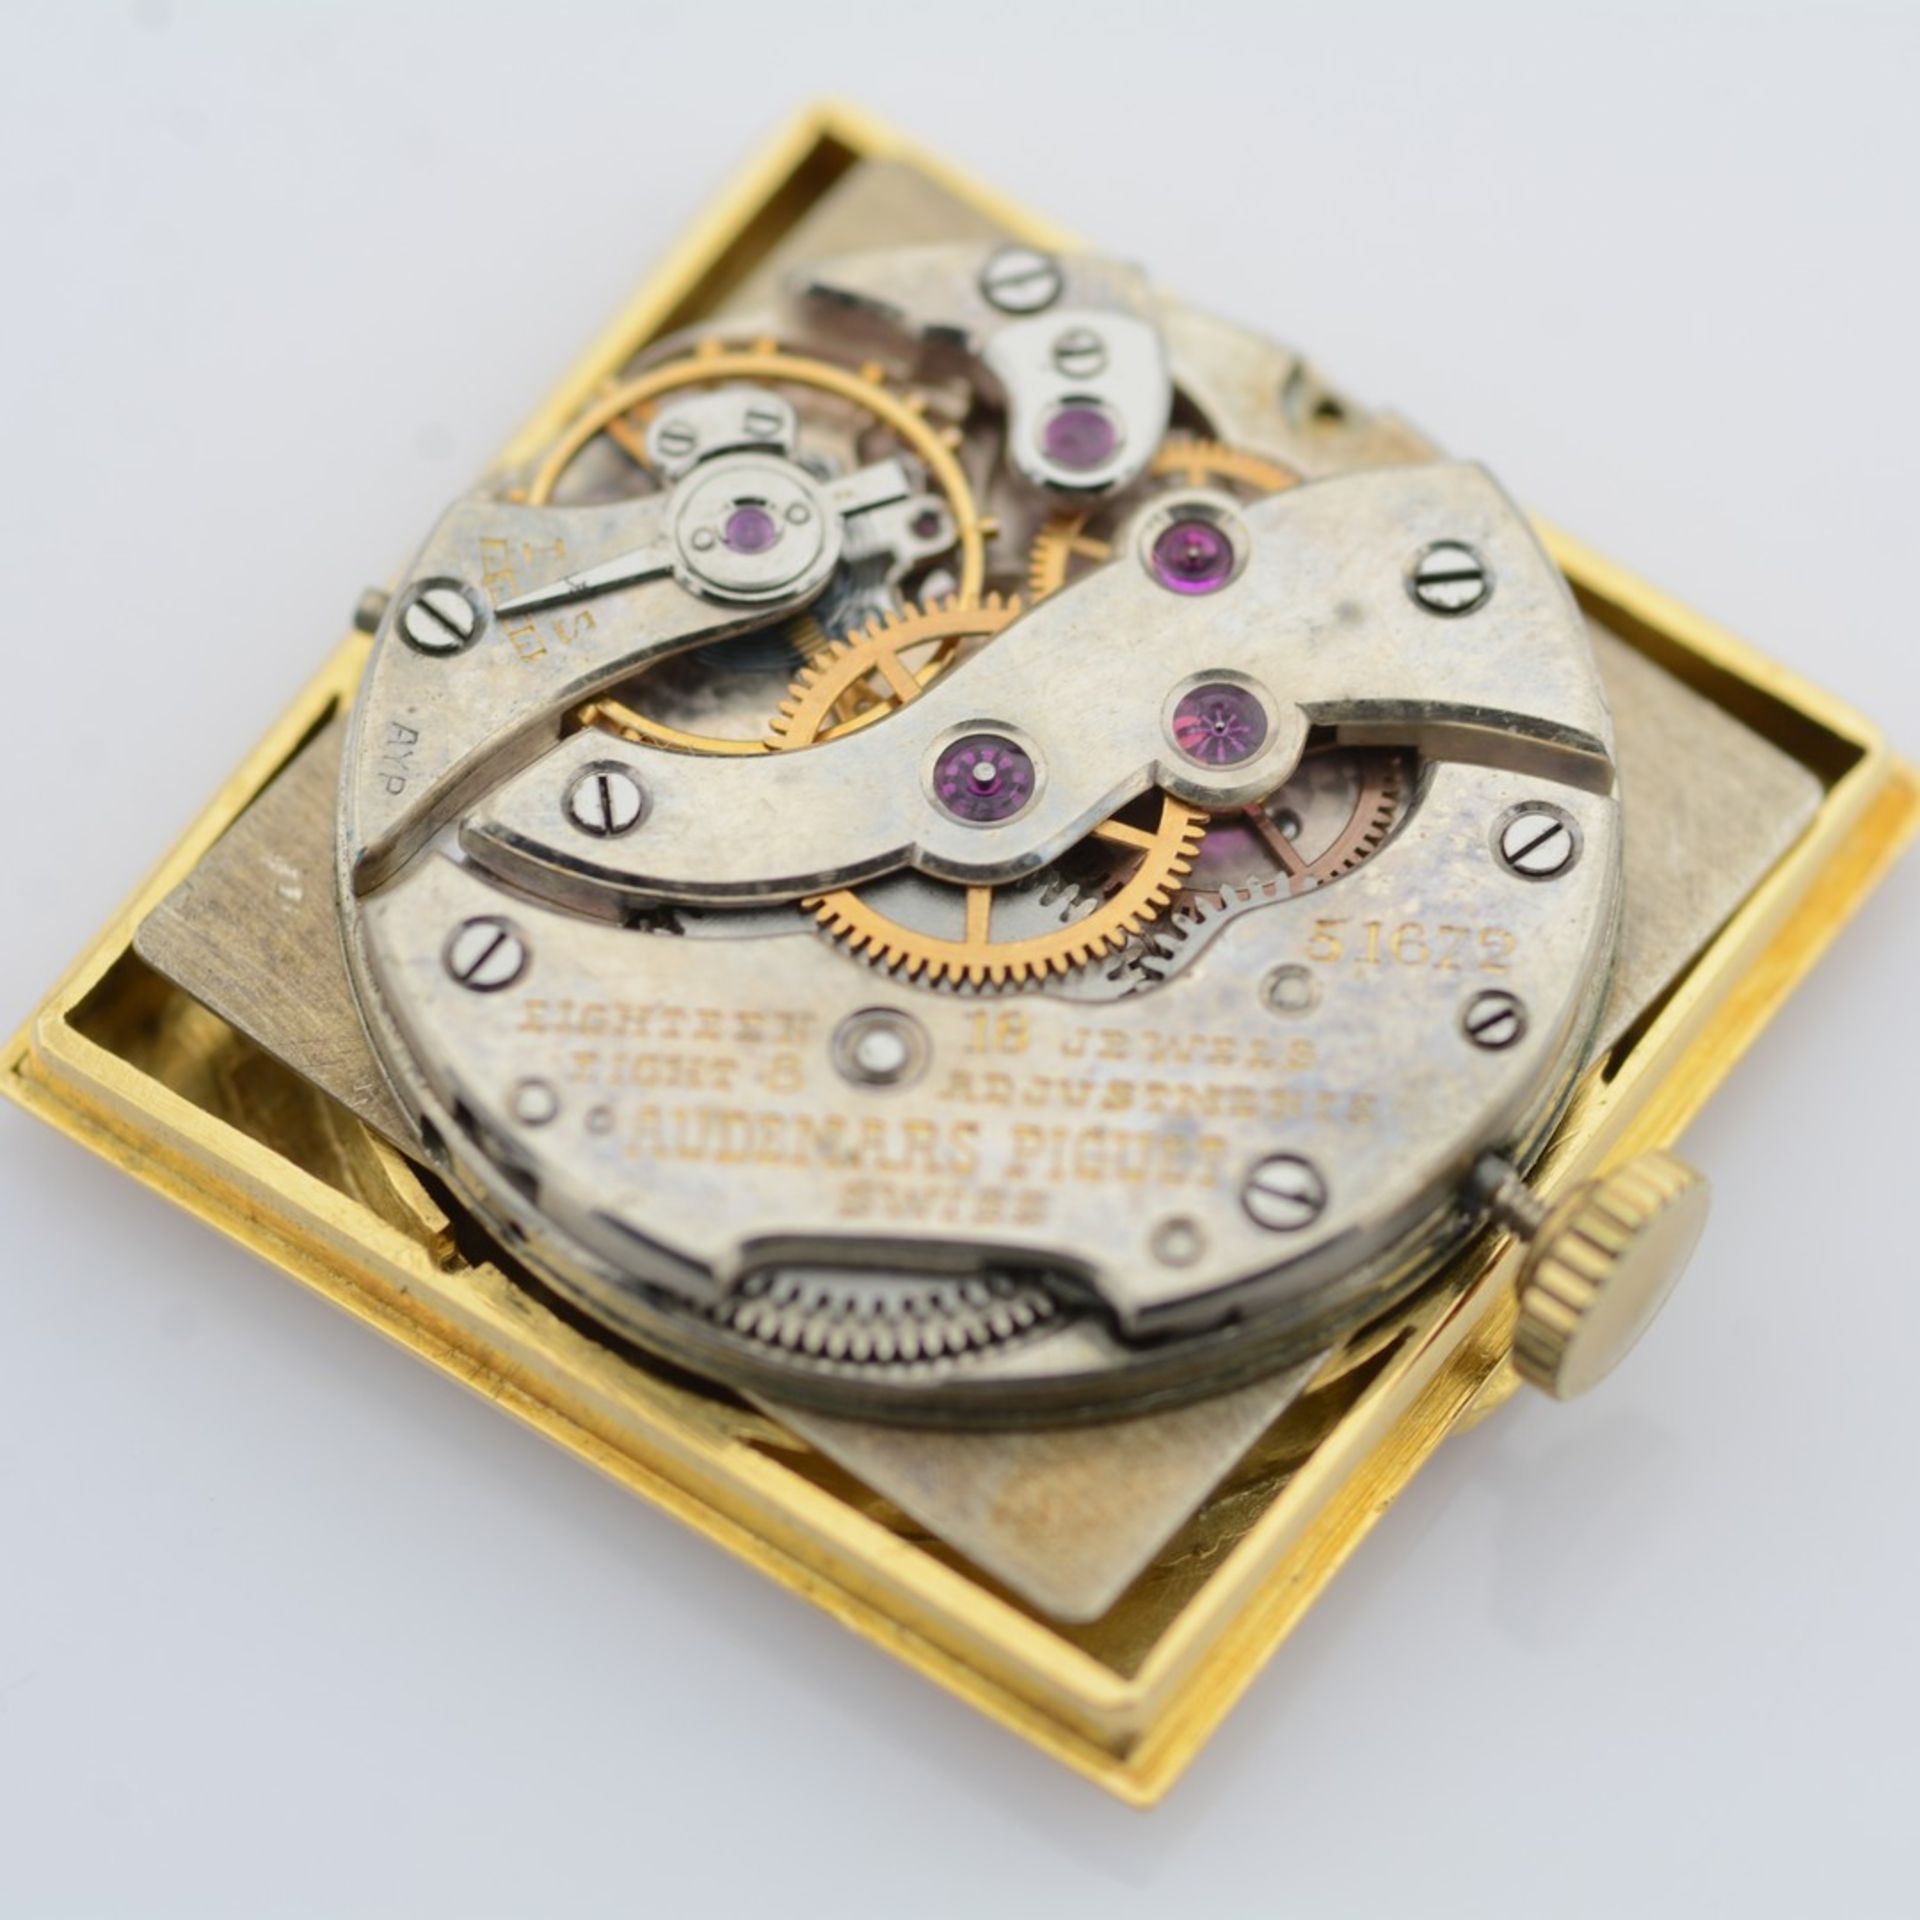 Audemars Piguet / Vintage - Square - Sub Second - Unisex Yellow Gold Wristwatch - Image 11 of 12